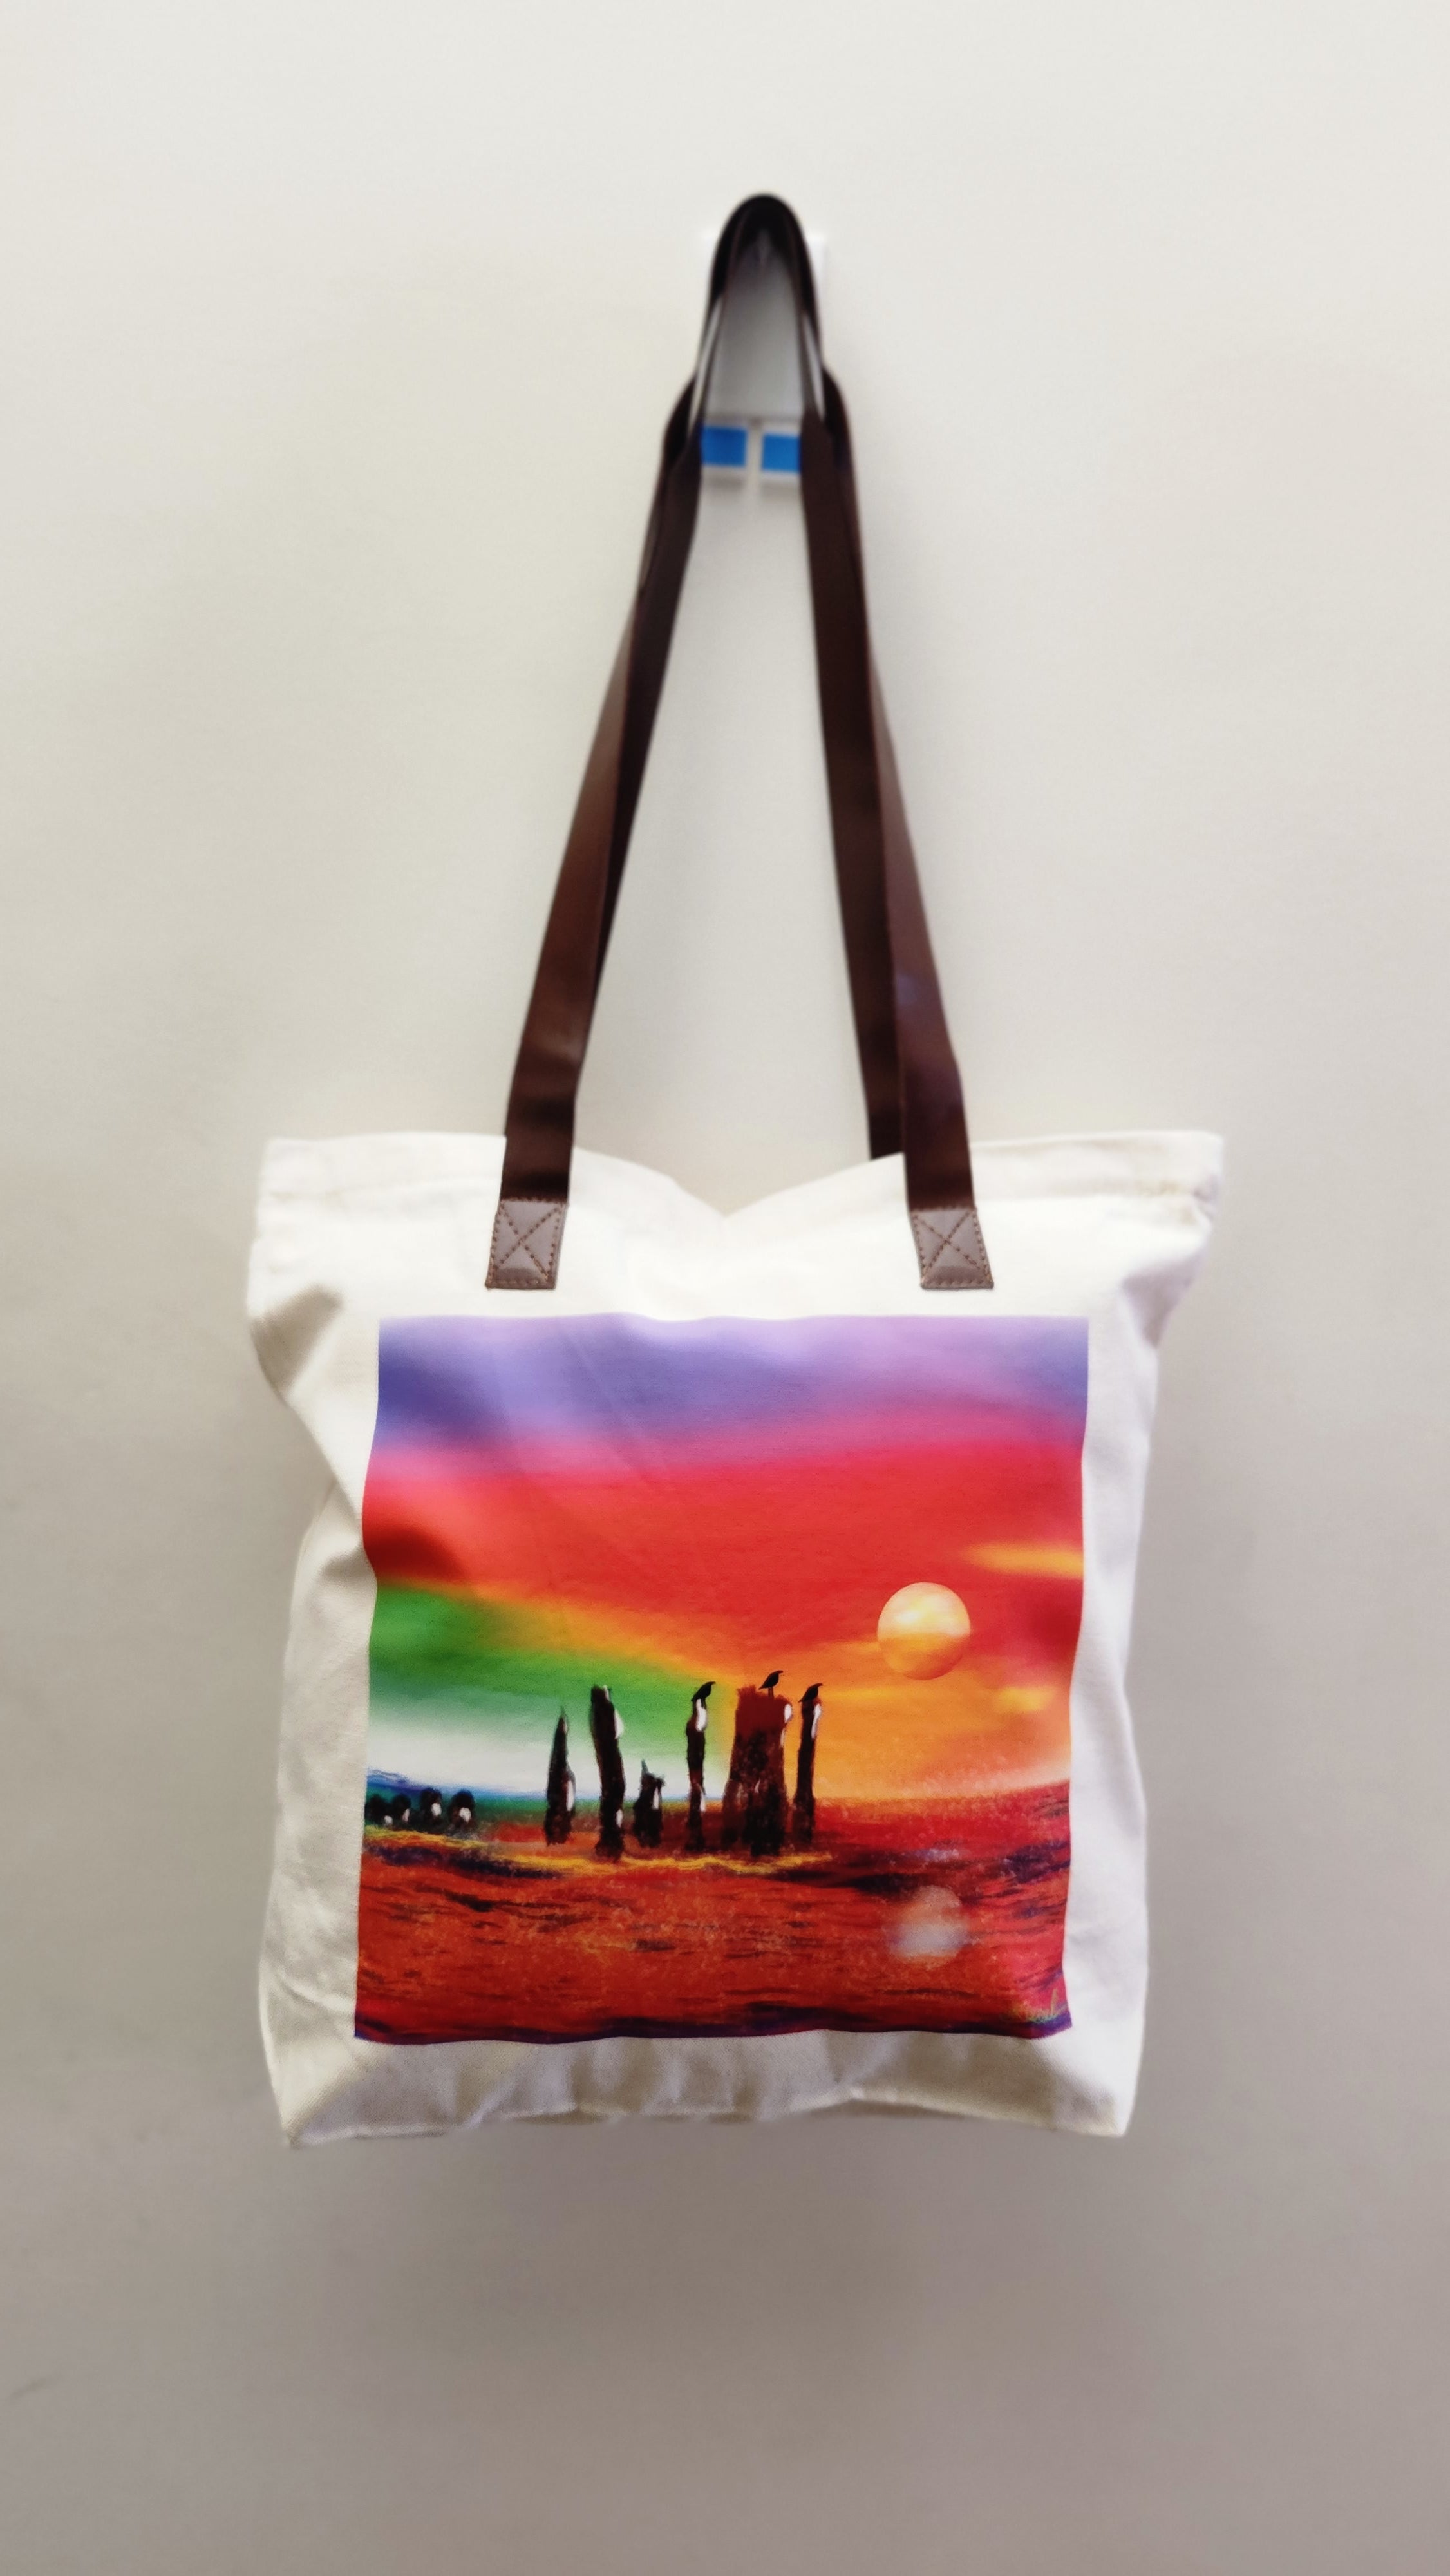 Boutique style tote bag- Port Willunga Shipwreck design